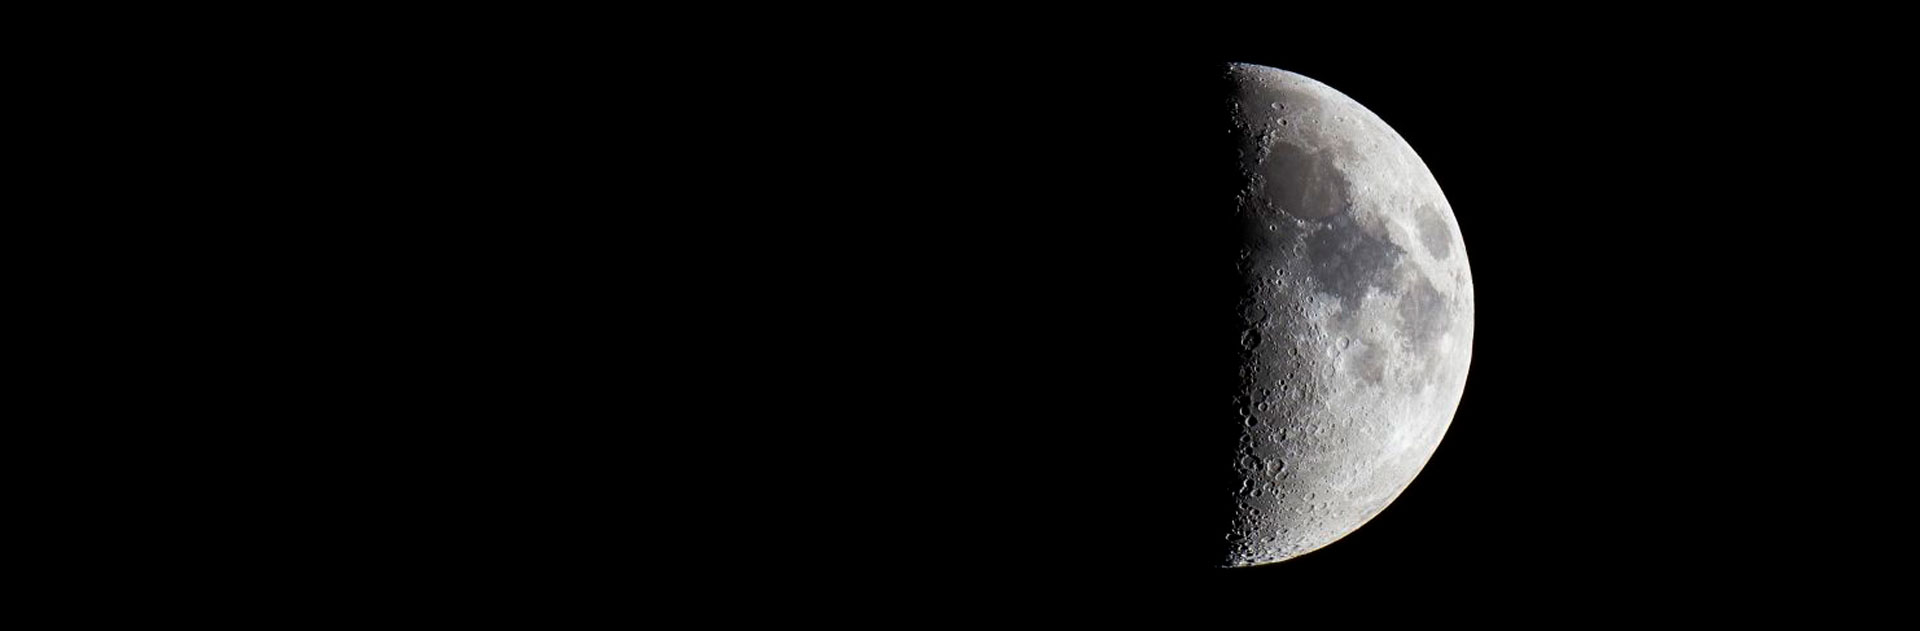 Eclipse lunar 16 julio 2019